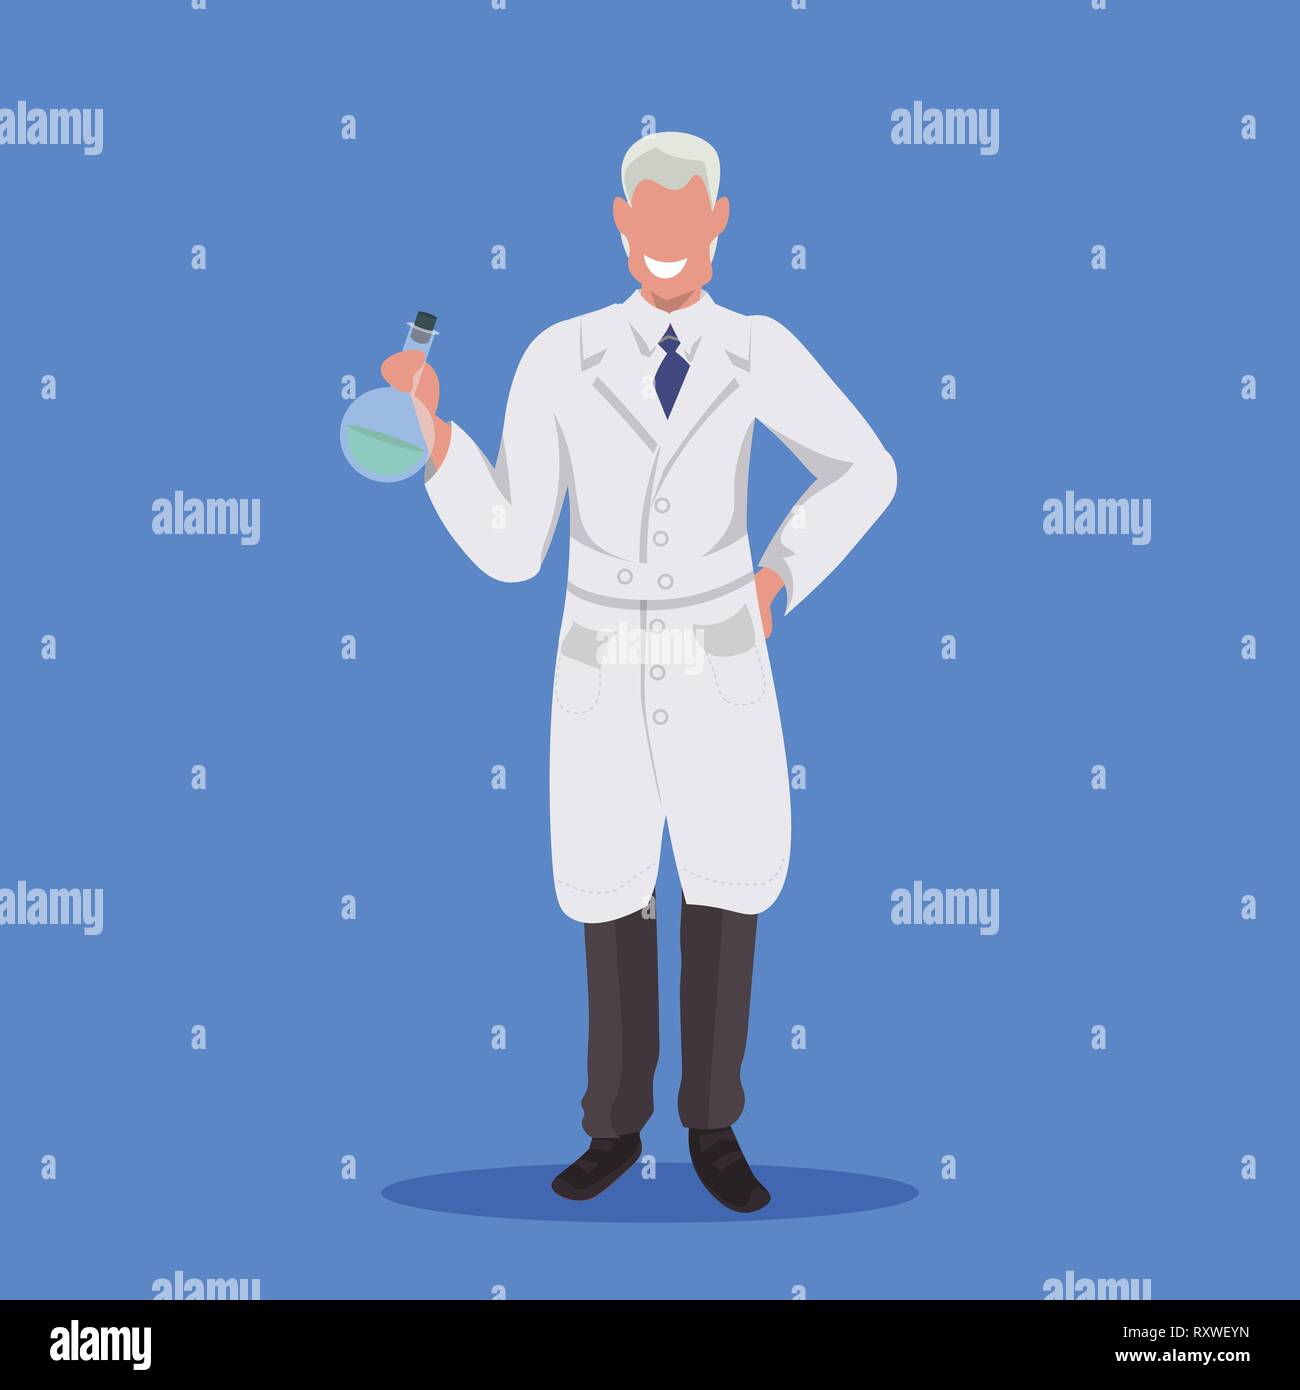 Männliche Wissenschaftler Reagenzglas mann Labortechniker in weiße Uniform medizinischer Arbeiter professionelle Besetzung Konzept blauen Hintergrund Flachbild voll Stock Vektor